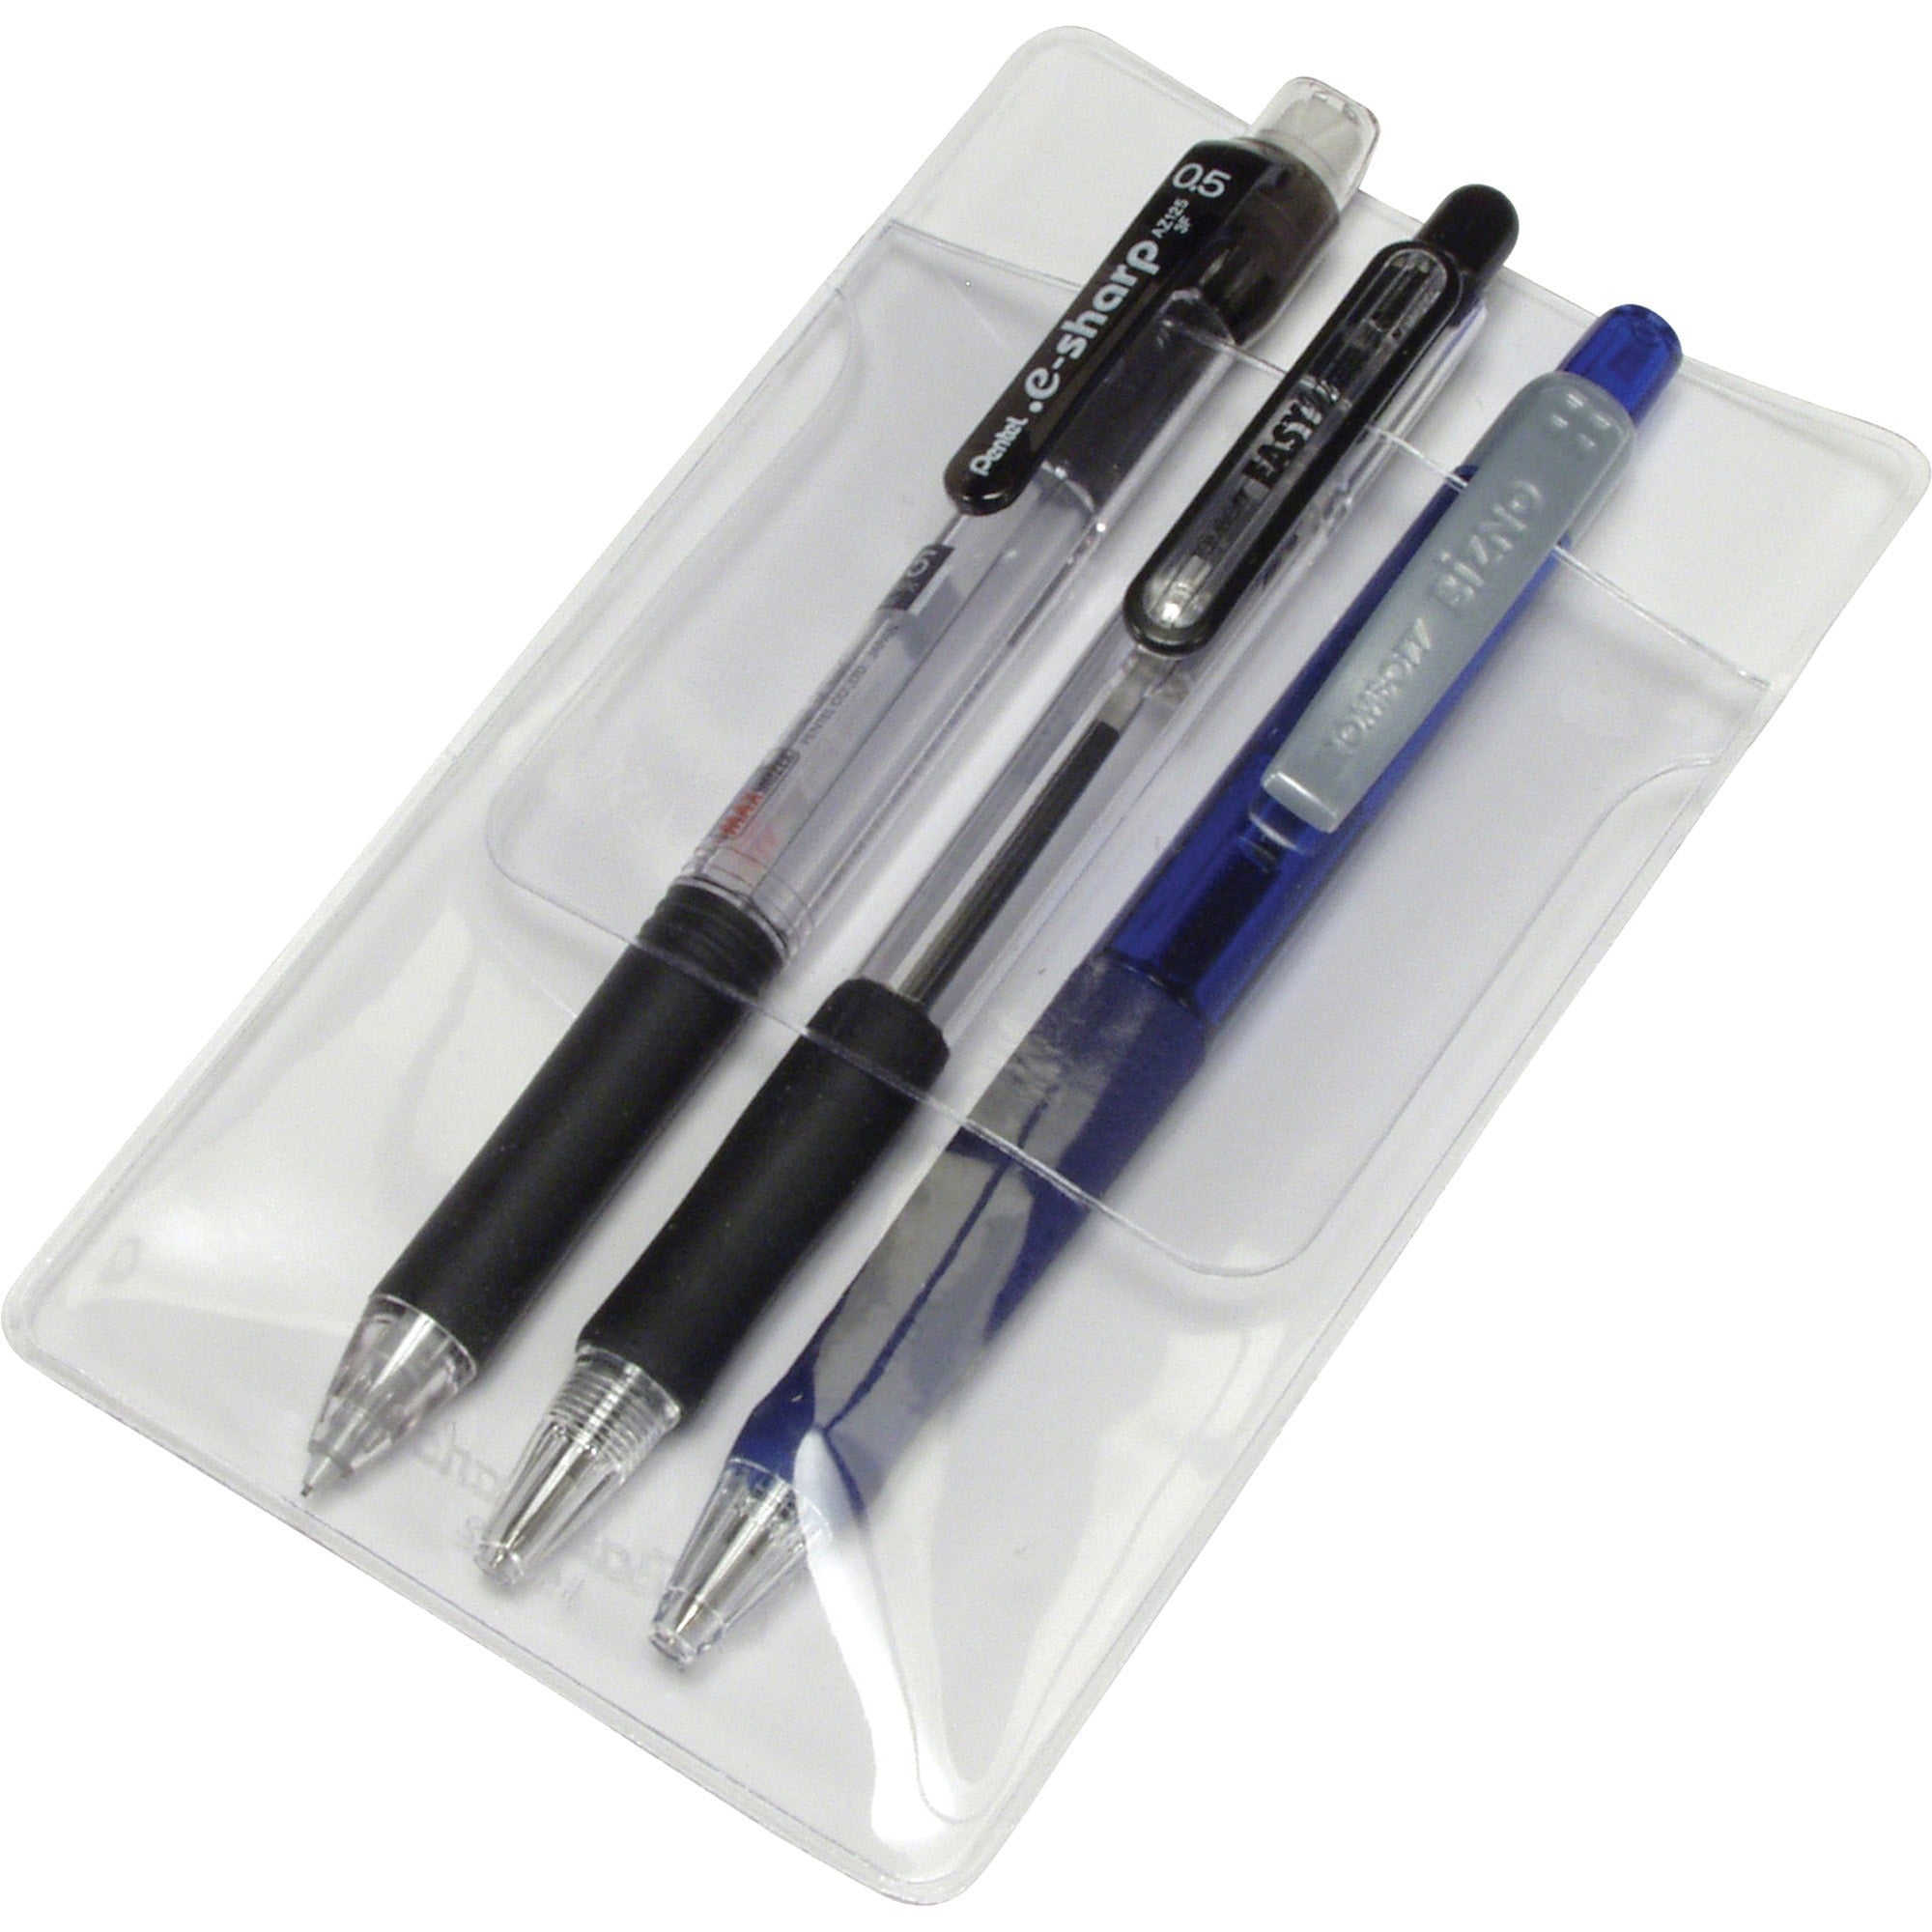 Baumgartens Pocket Protectors - Plastic - 48 / Box - Clear - 1